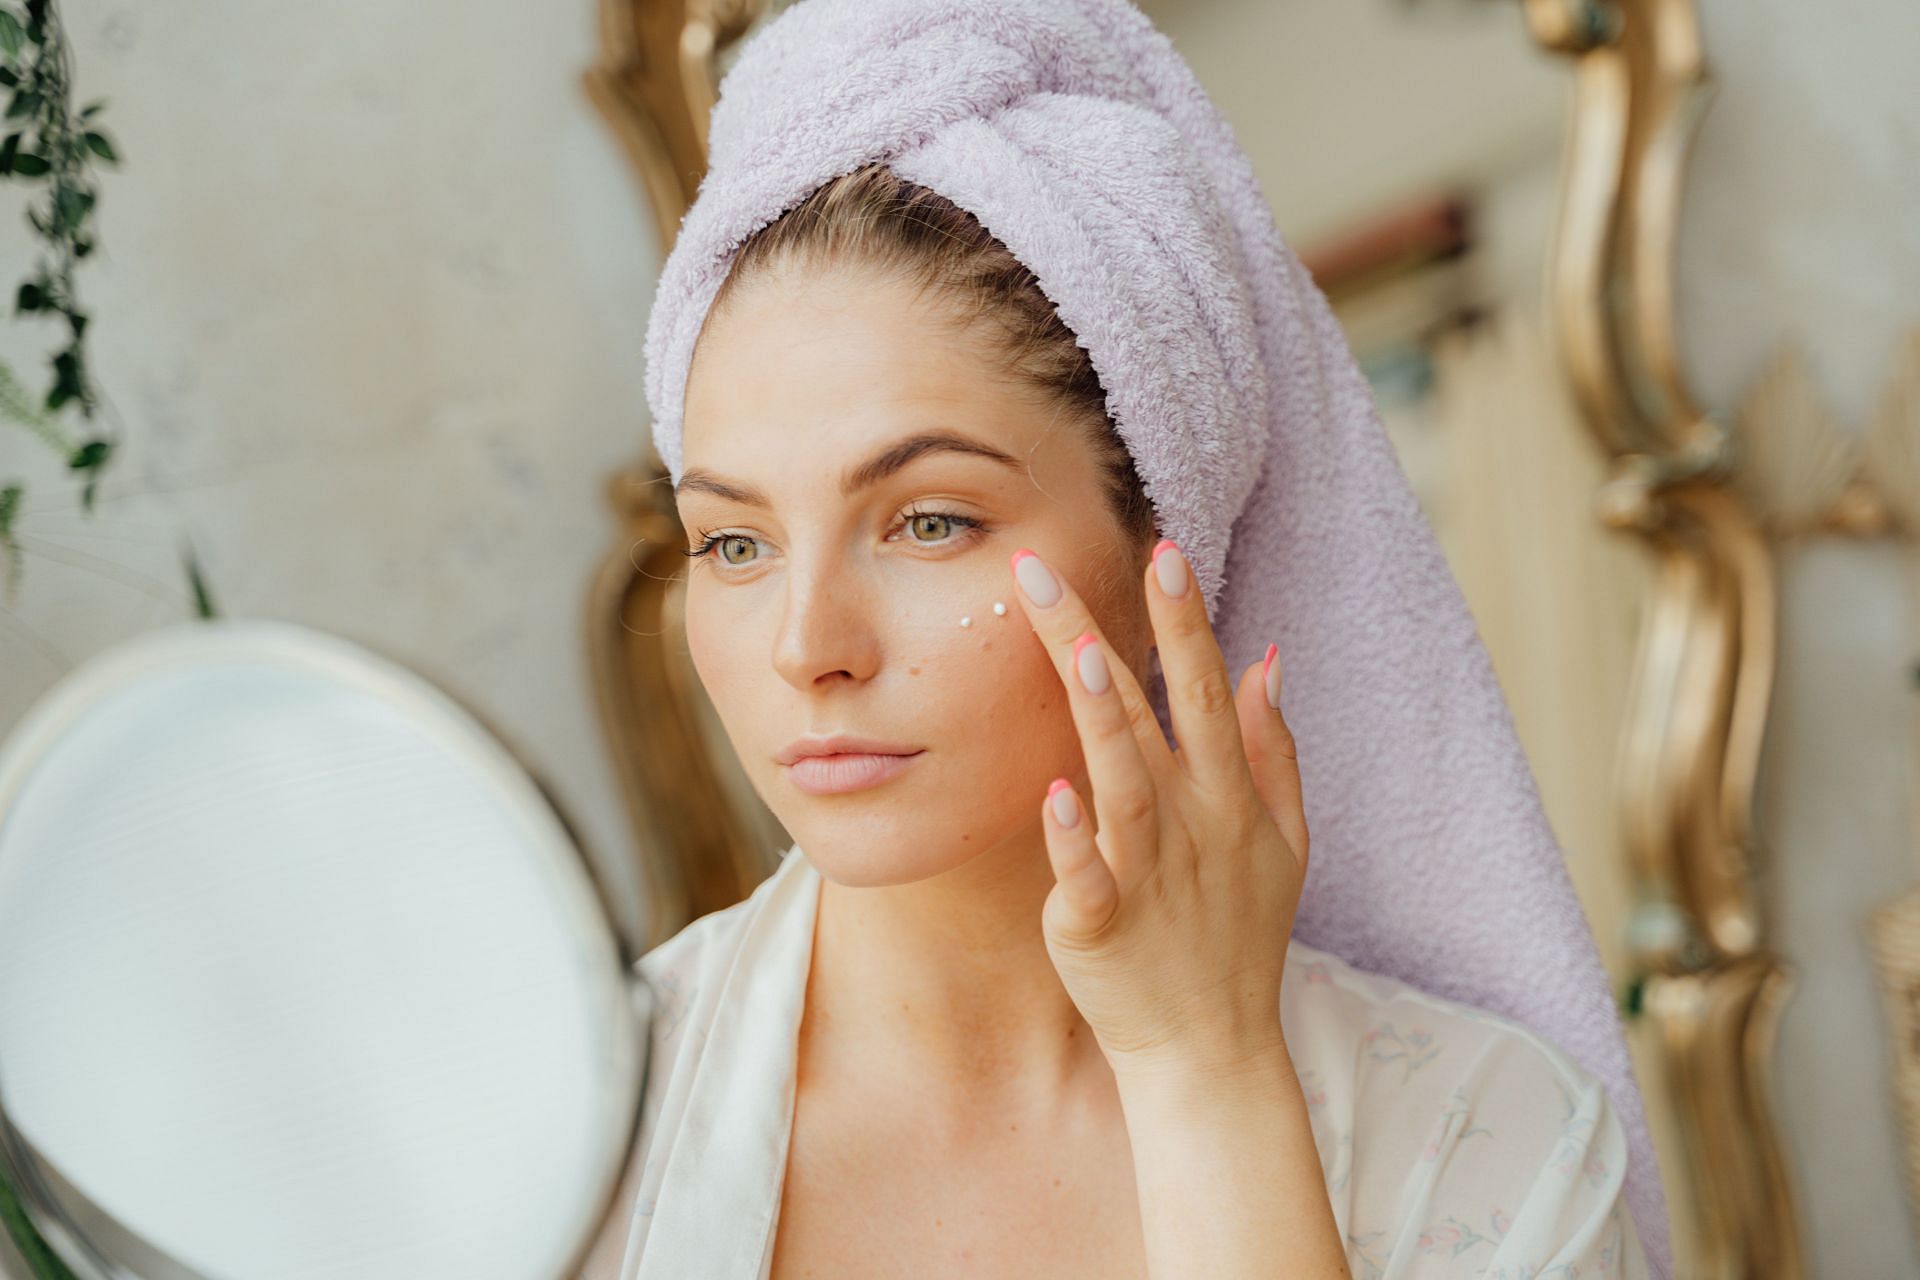 Regular use of moisturizer makes your skin more youthful. (Image via Pexels/ Antoni Shkraba)